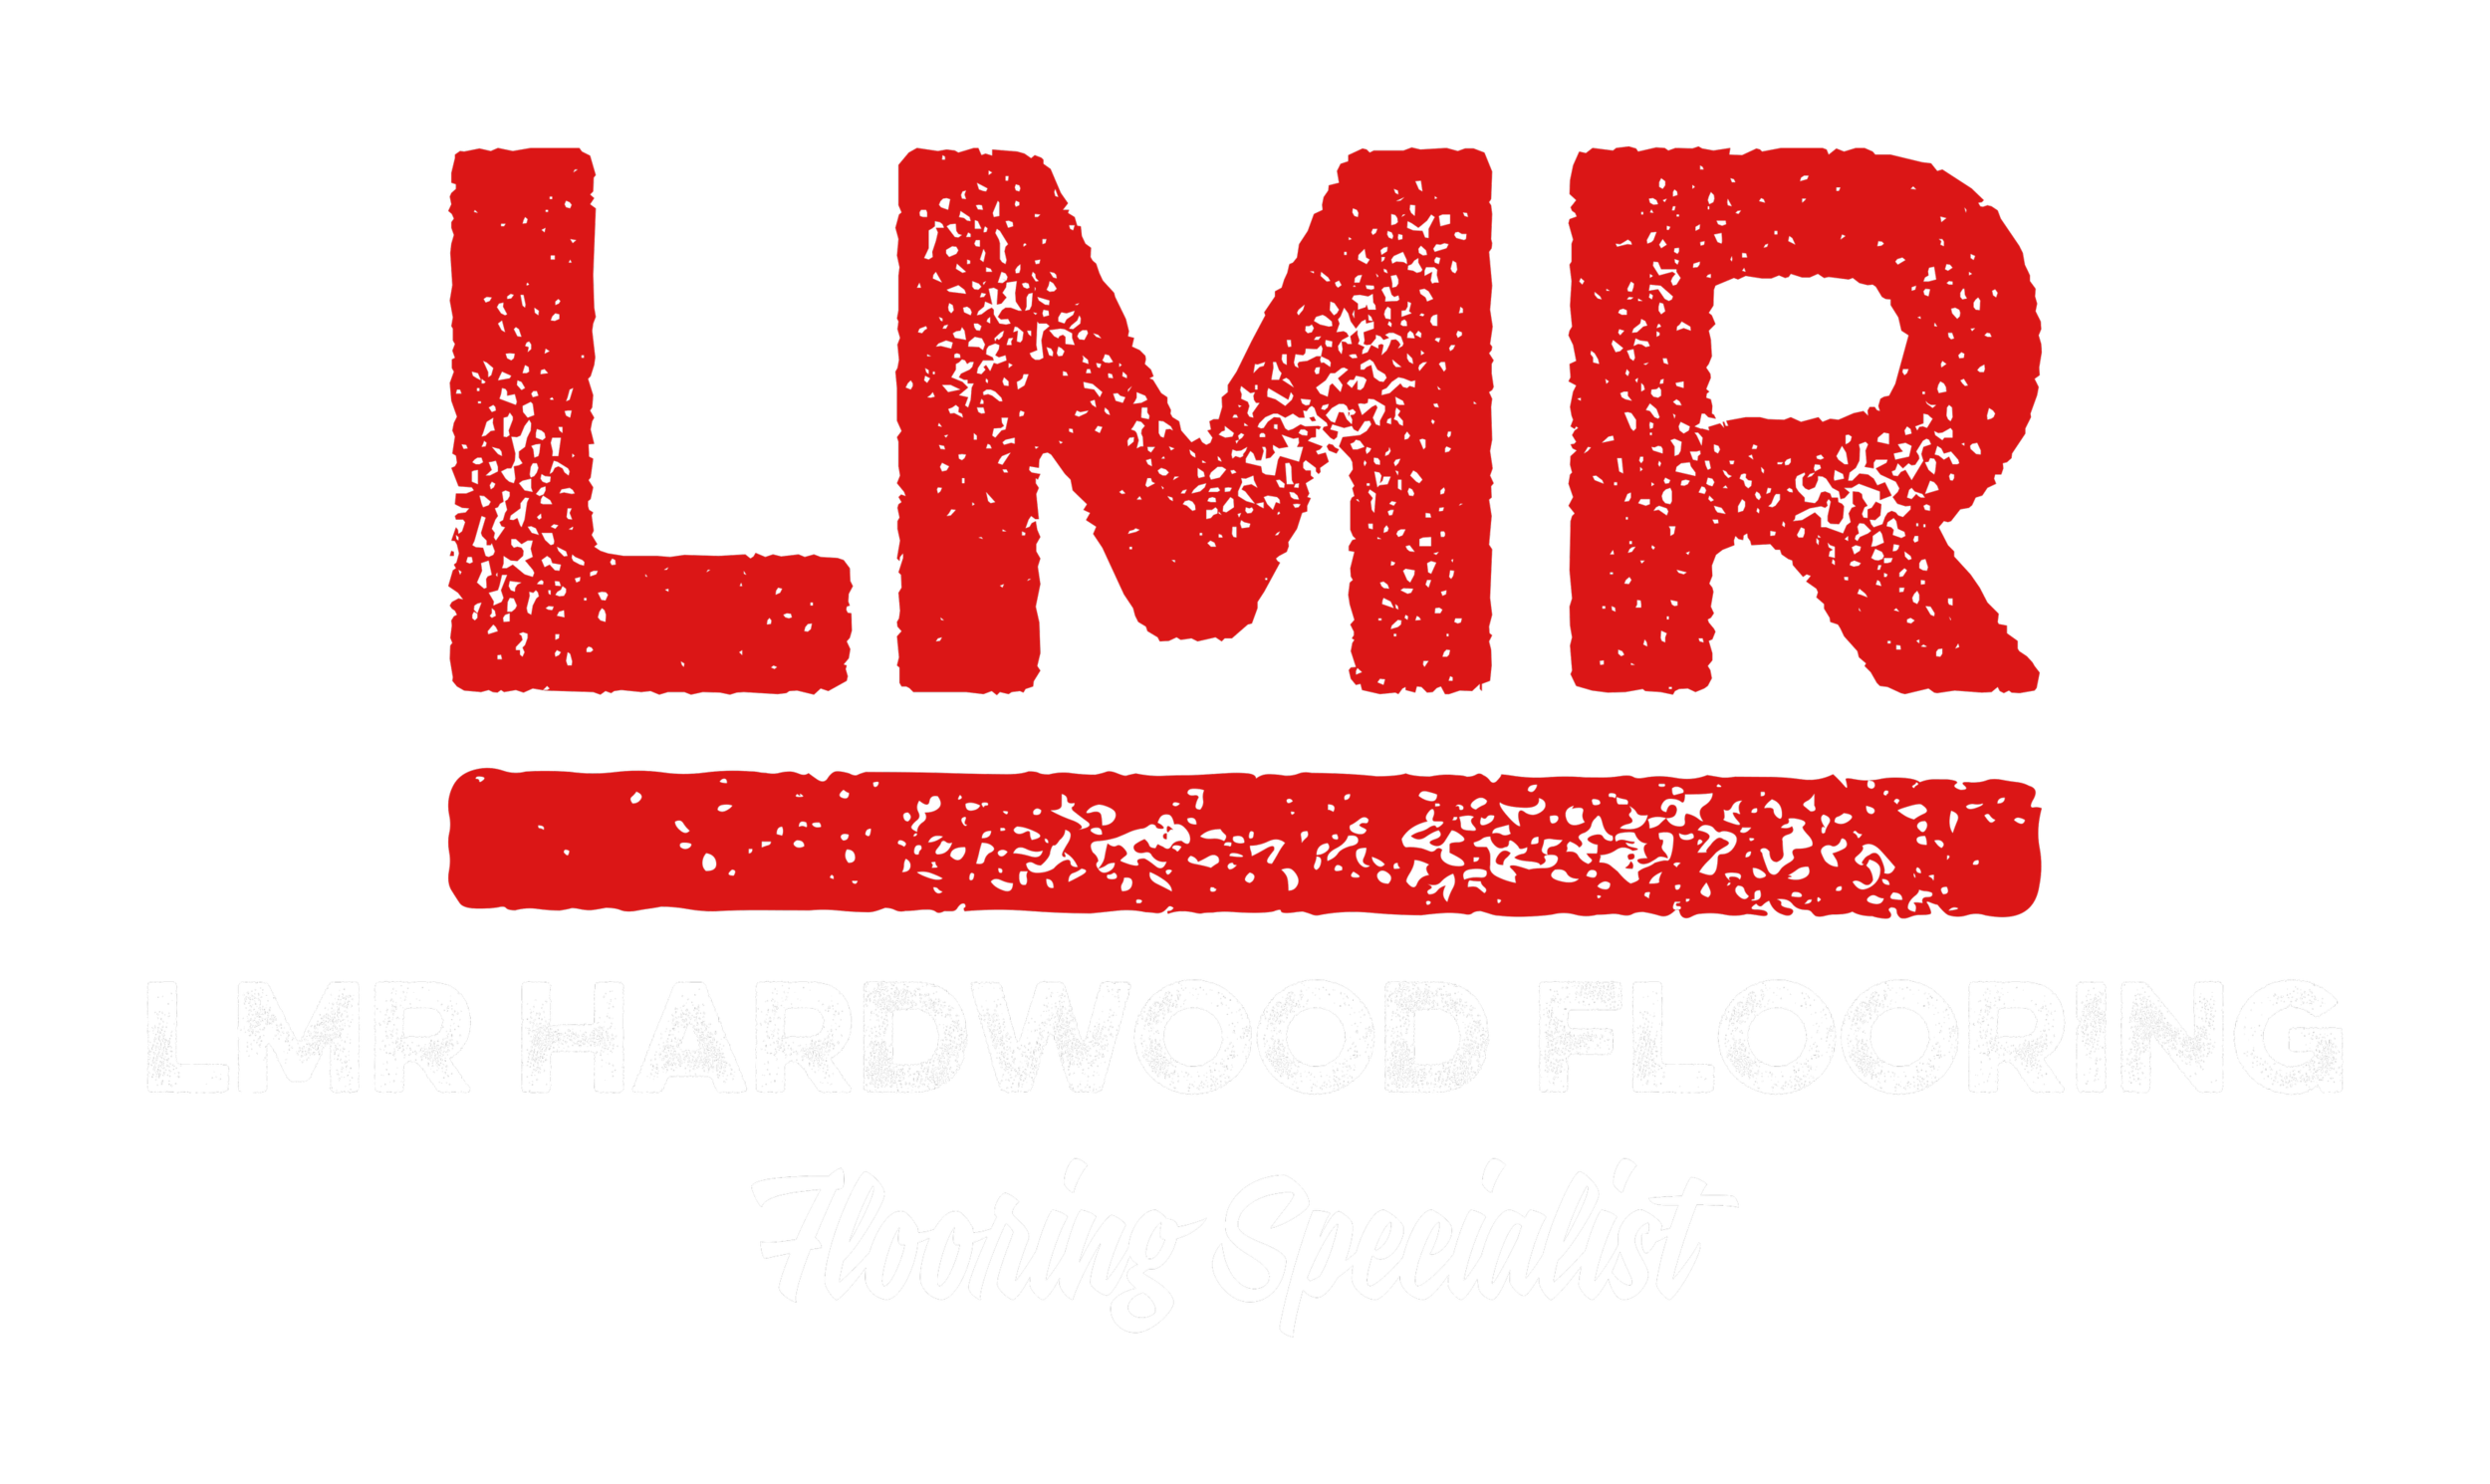 LMR Hardwood Flooring